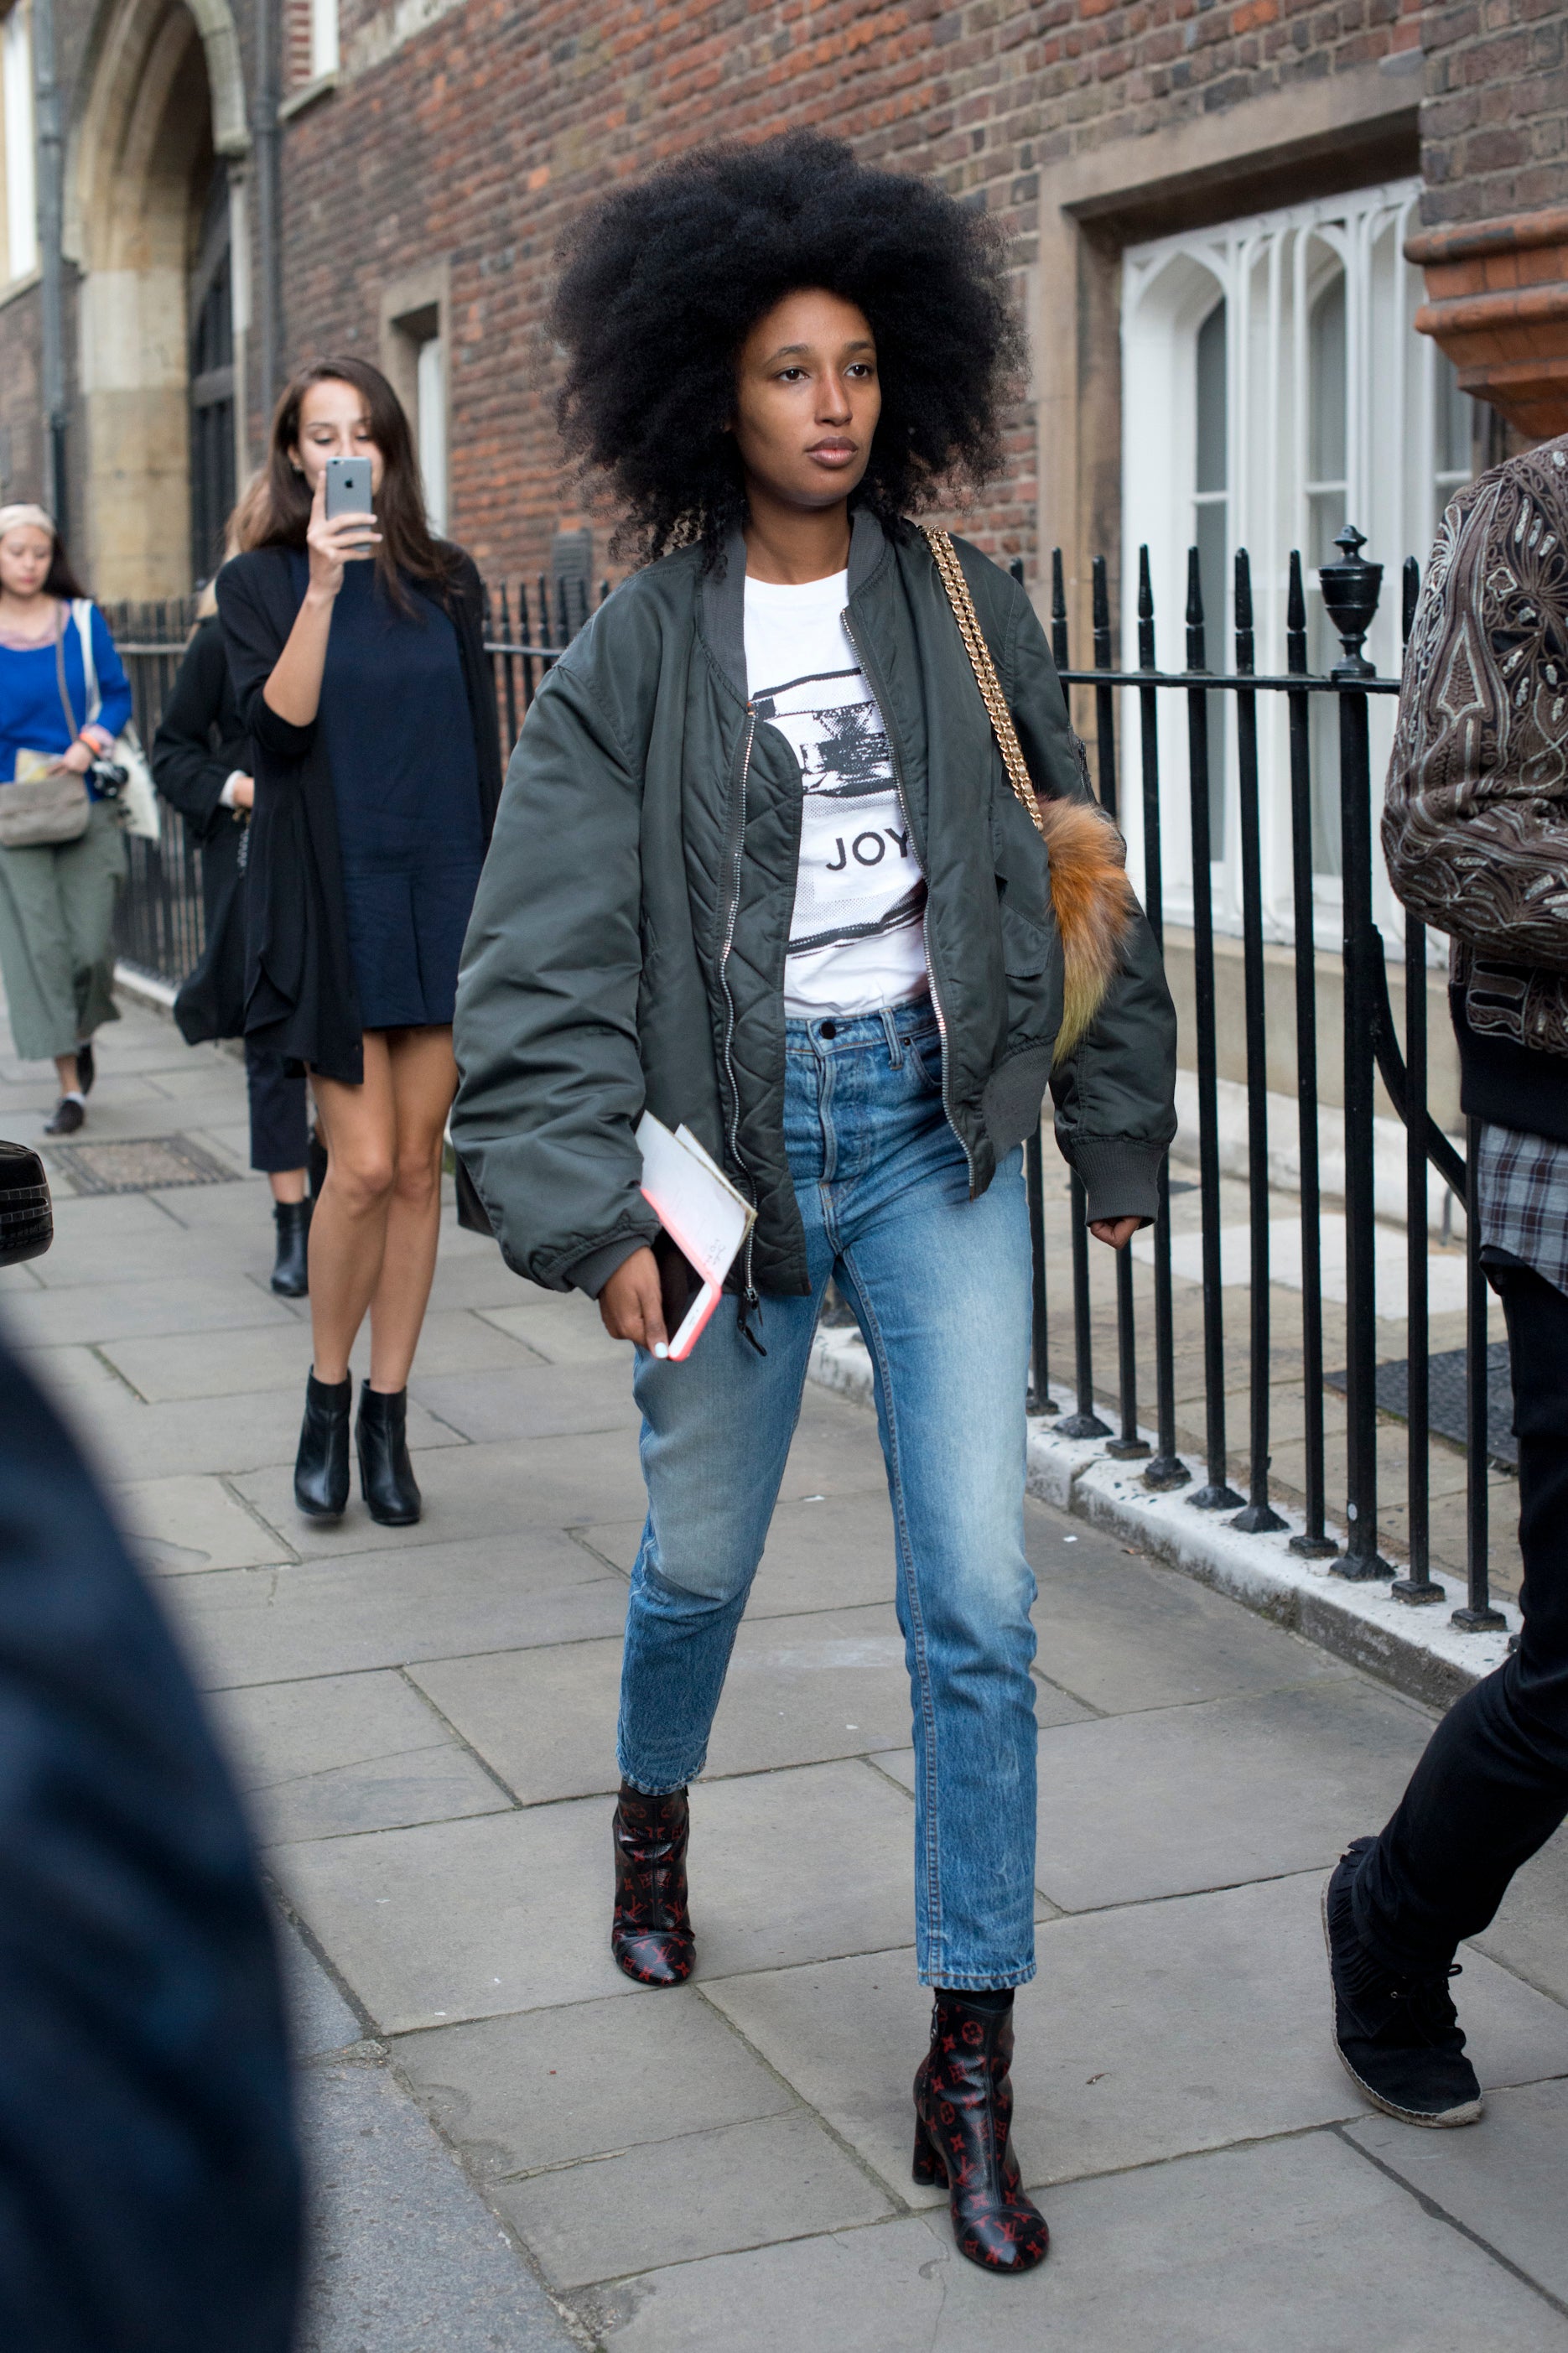 Best Street Style from London Fashion Week
